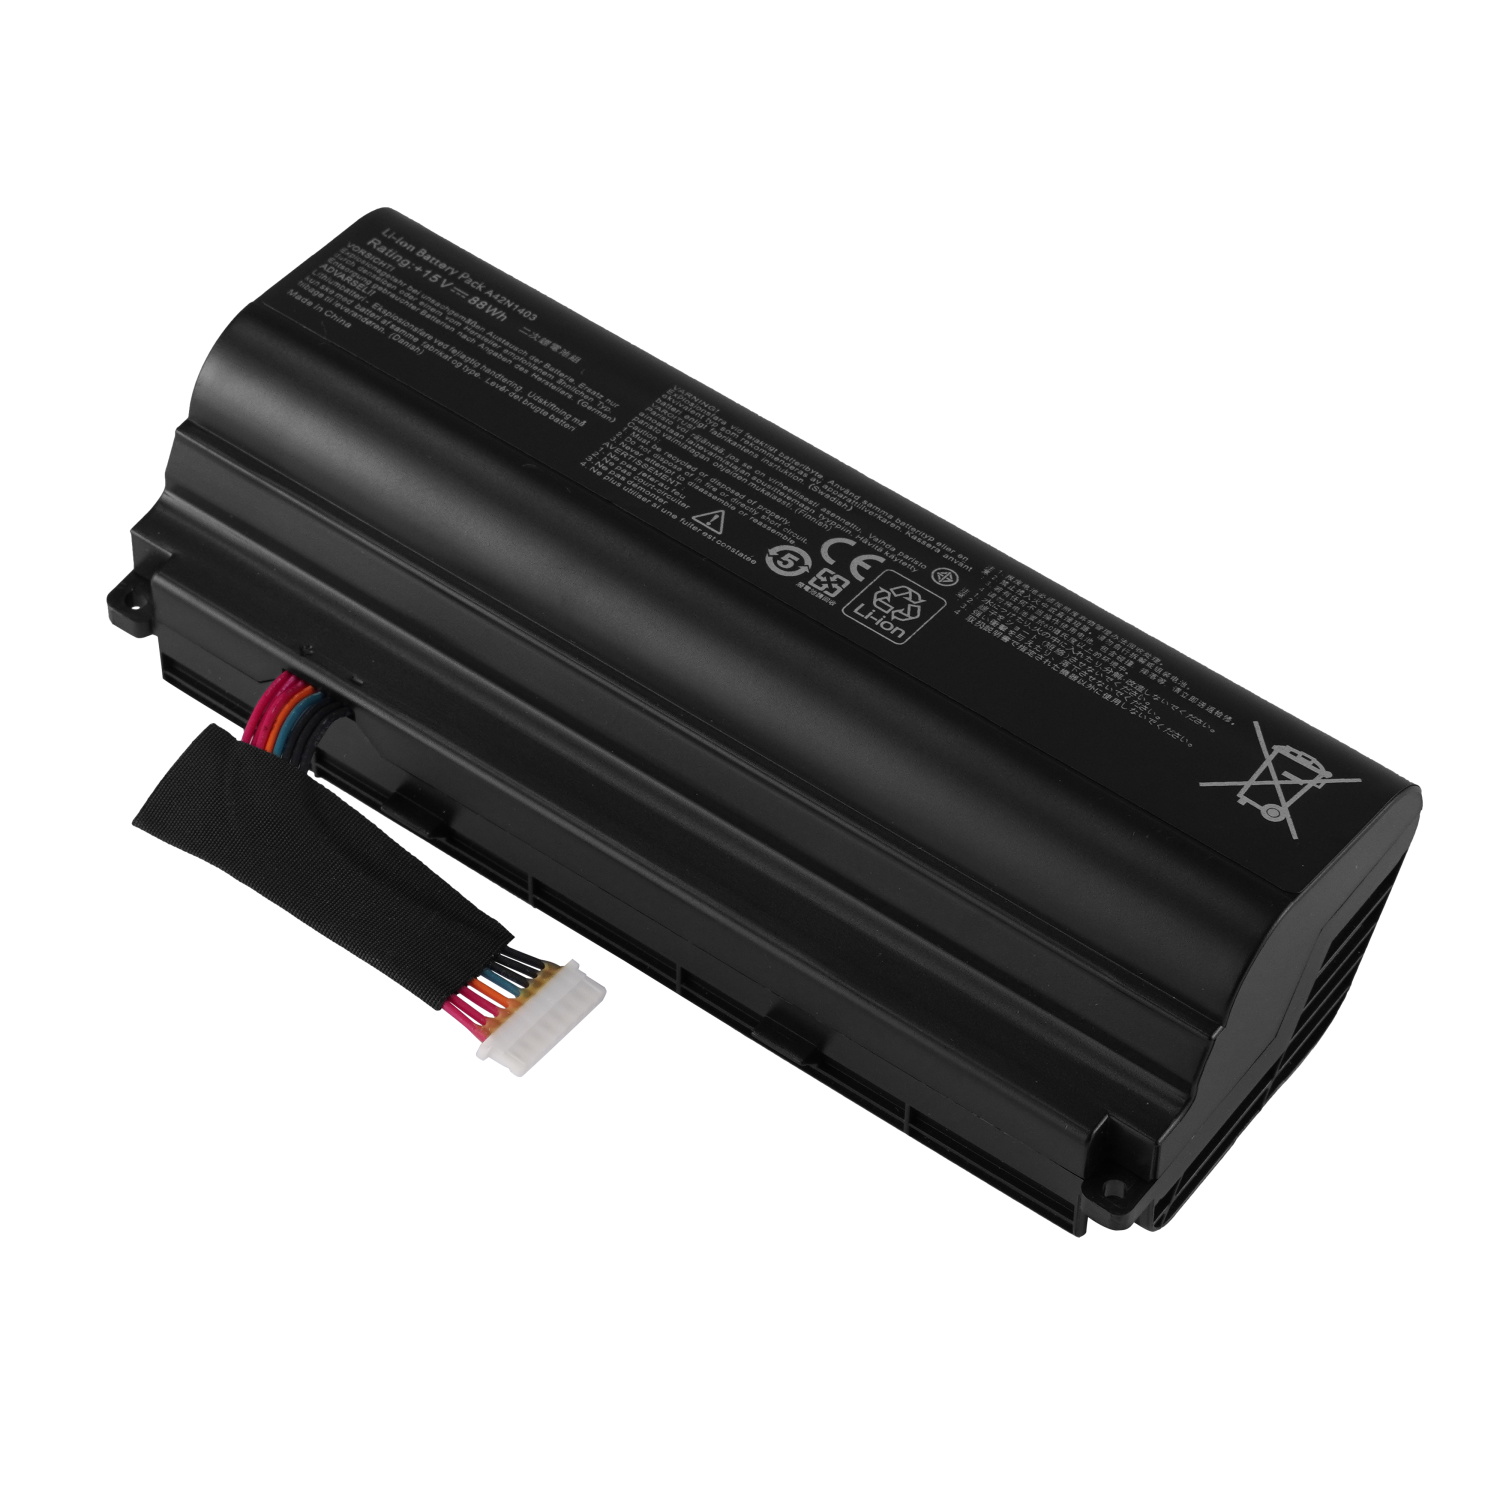 Best Seller OEM Manufacturer laptop battery lithium ion batteries A42N1403 for Asus ROG G751 G751J G751JM G751JT